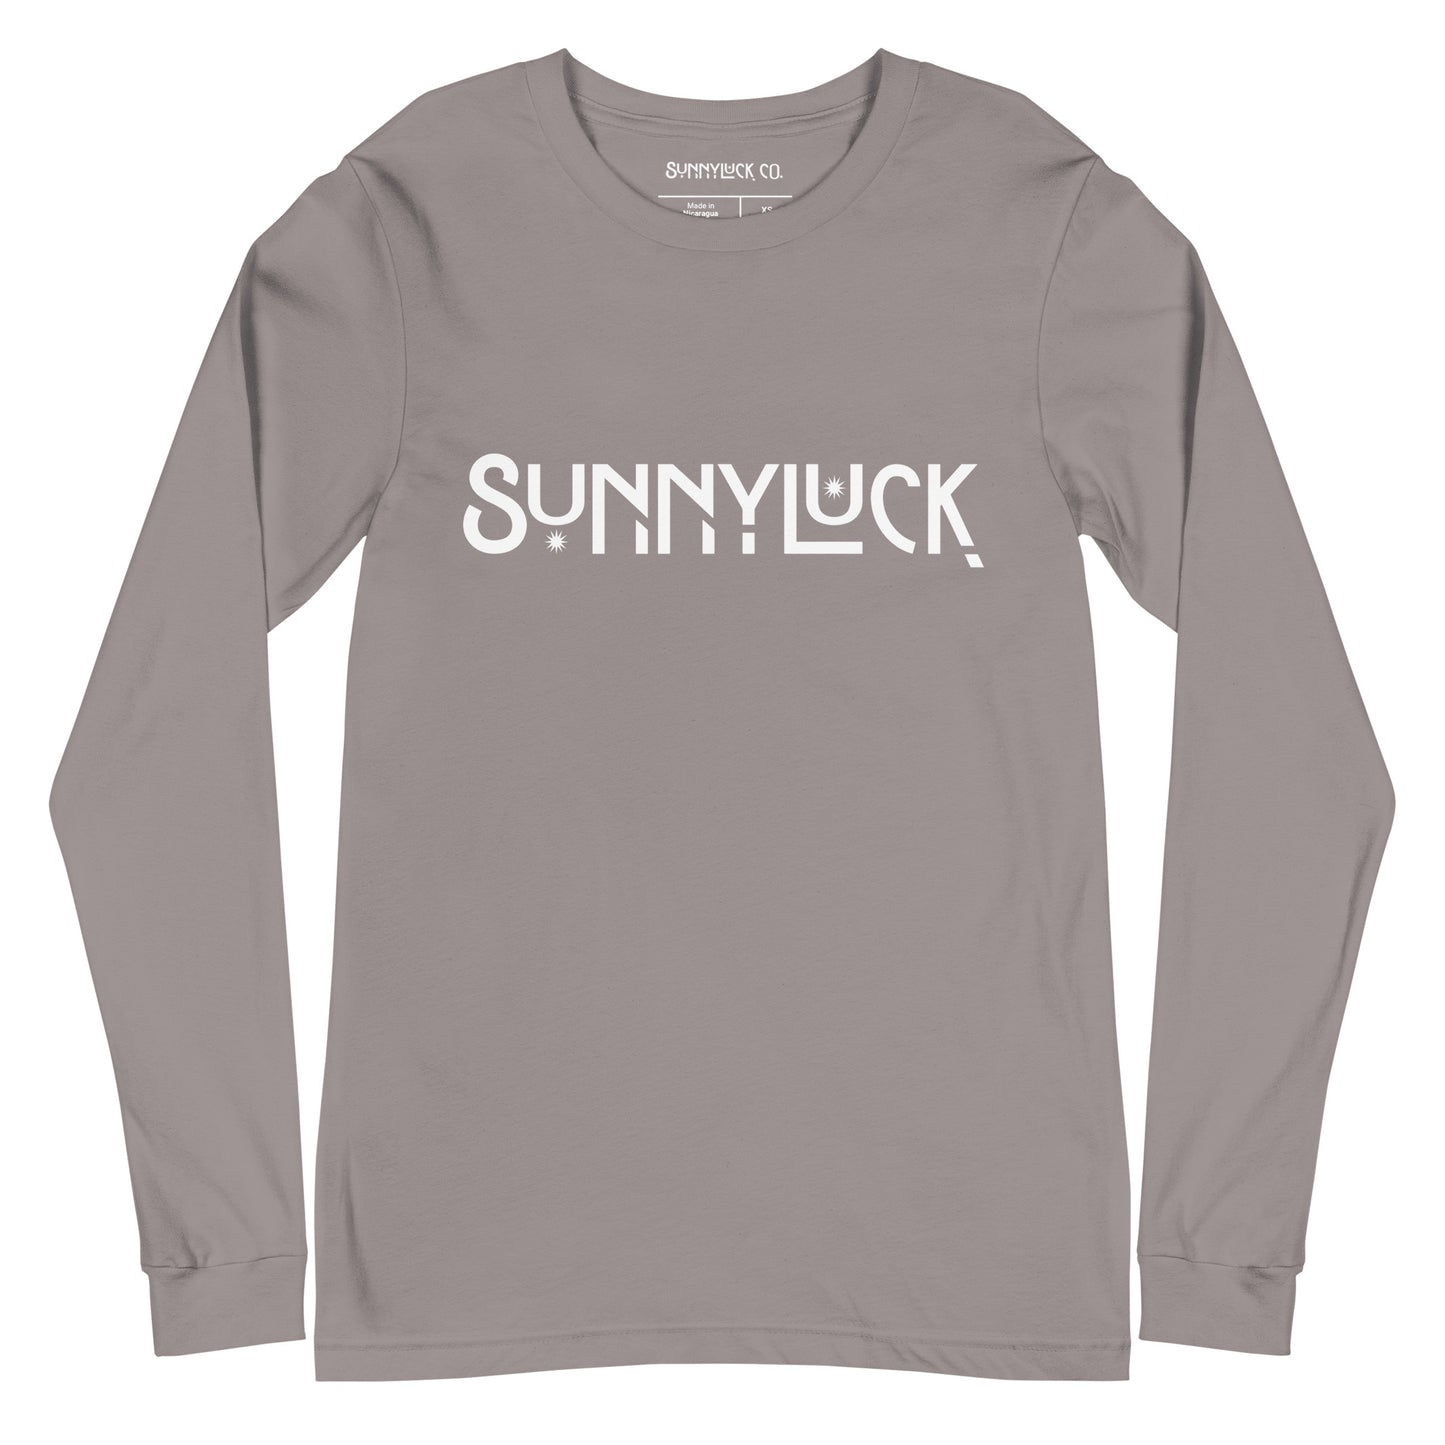 The SunnyLuck Long Sleeve Tee